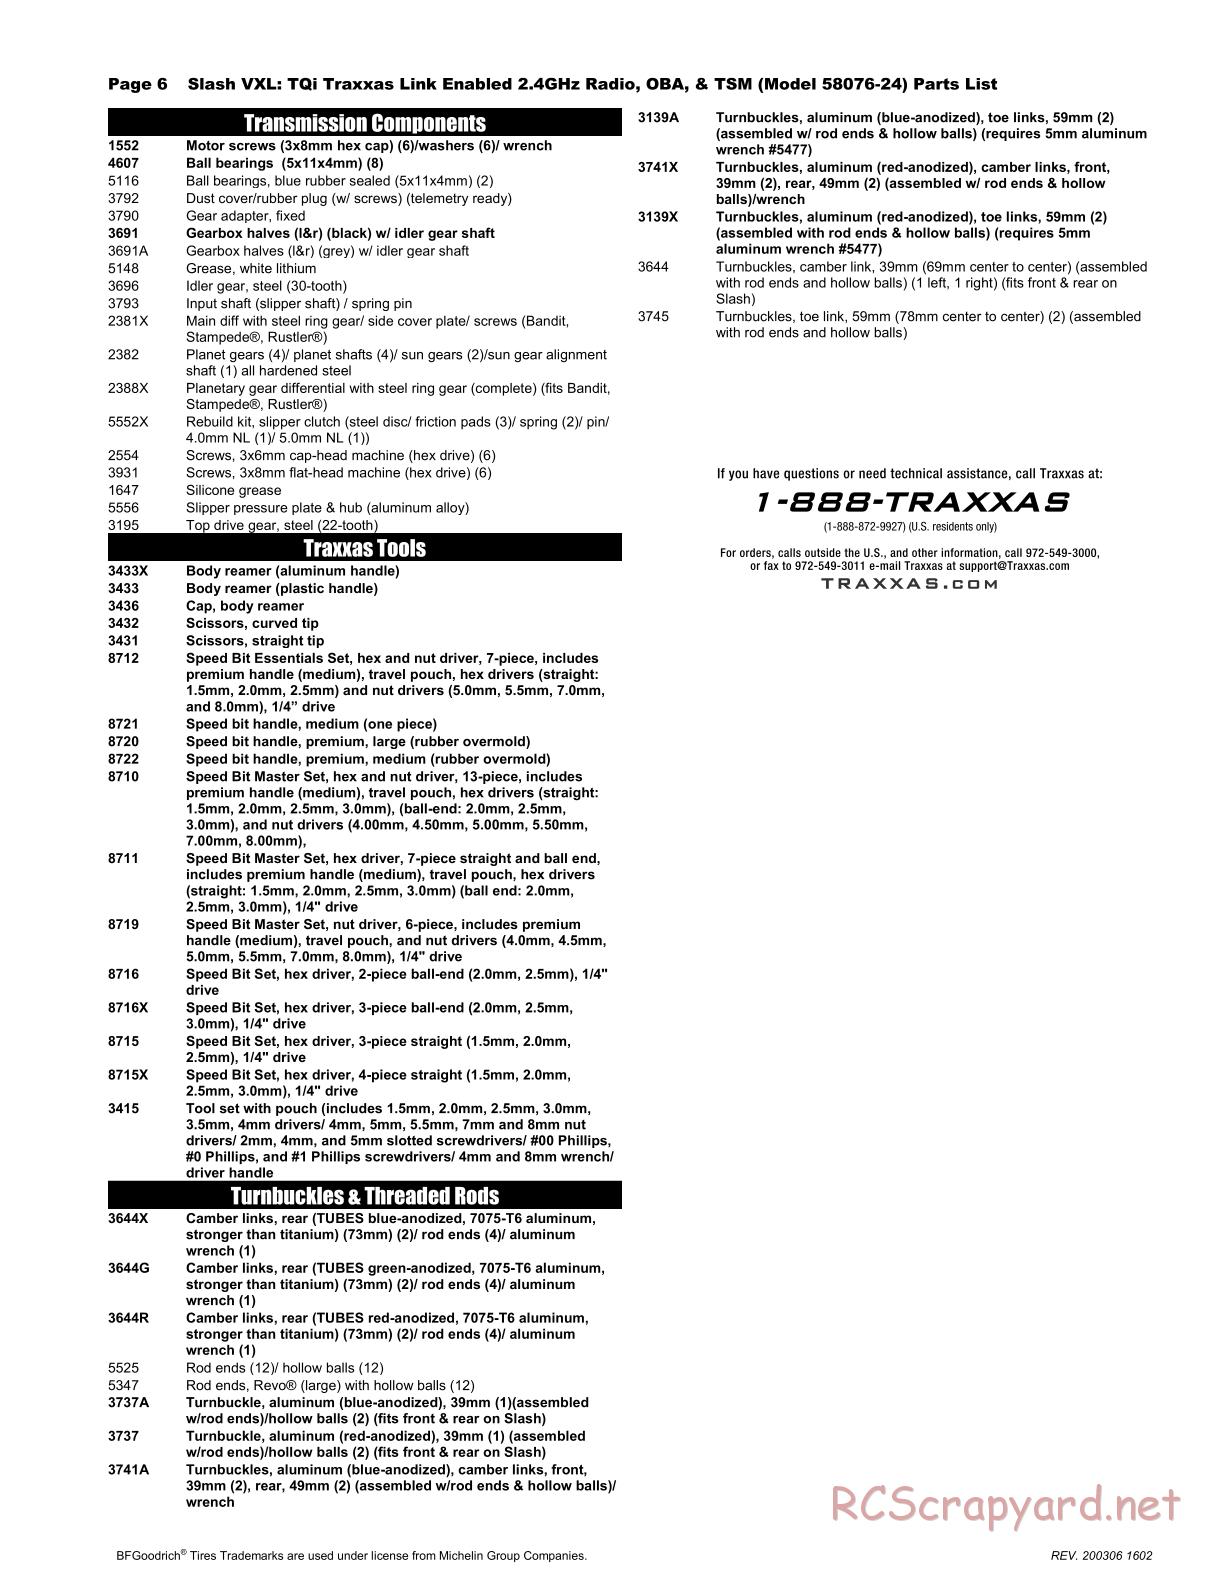 Traxxas - Slash 2WD VXL TSM OBA (2017) - Parts List - Page 6